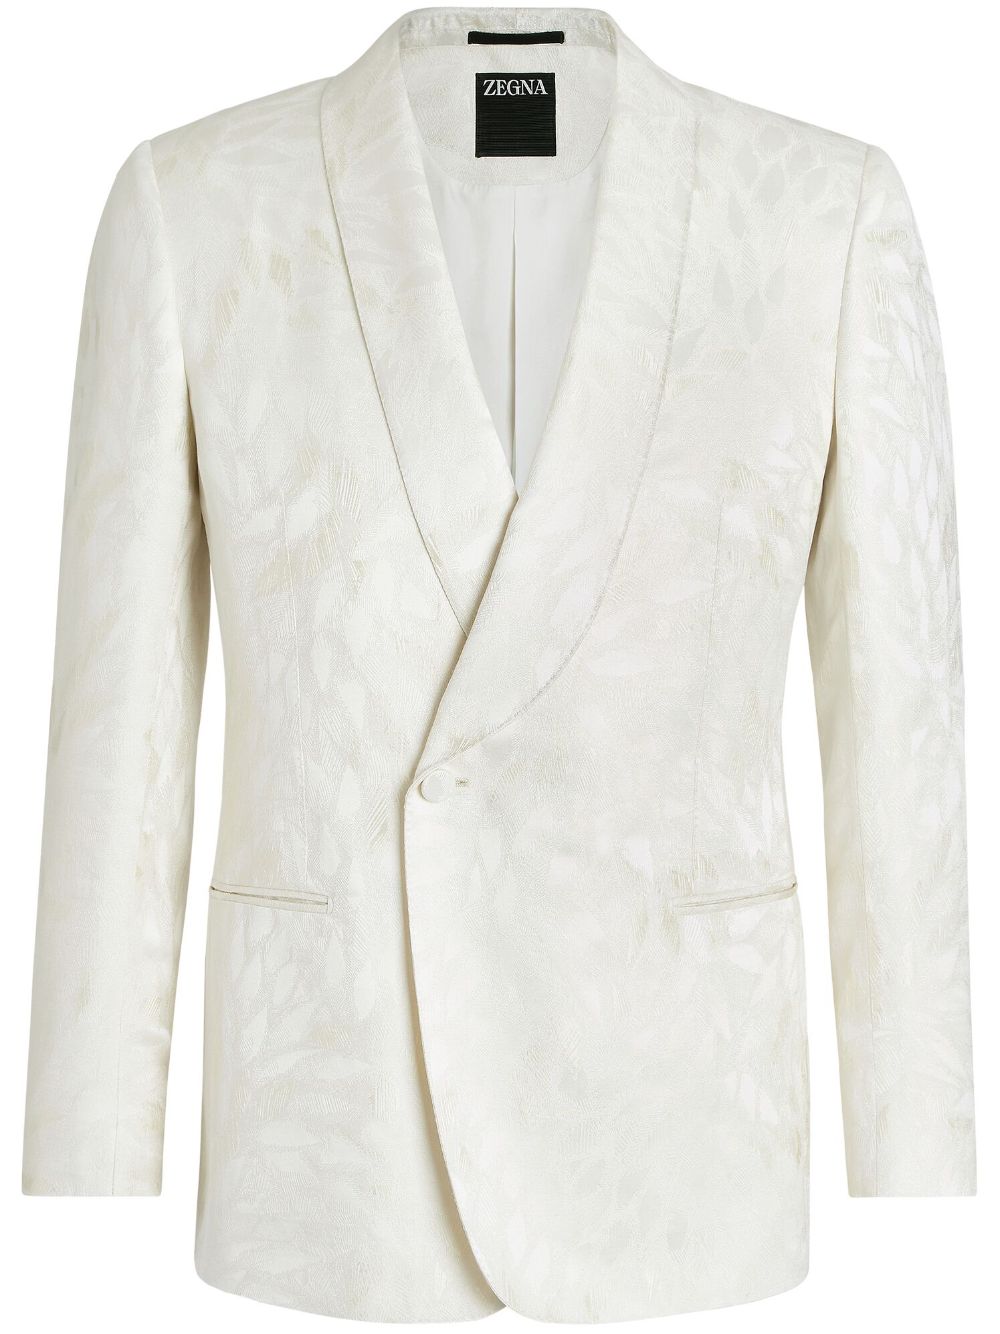 Zegna jacquard silk-wool evening jacket - White von Zegna